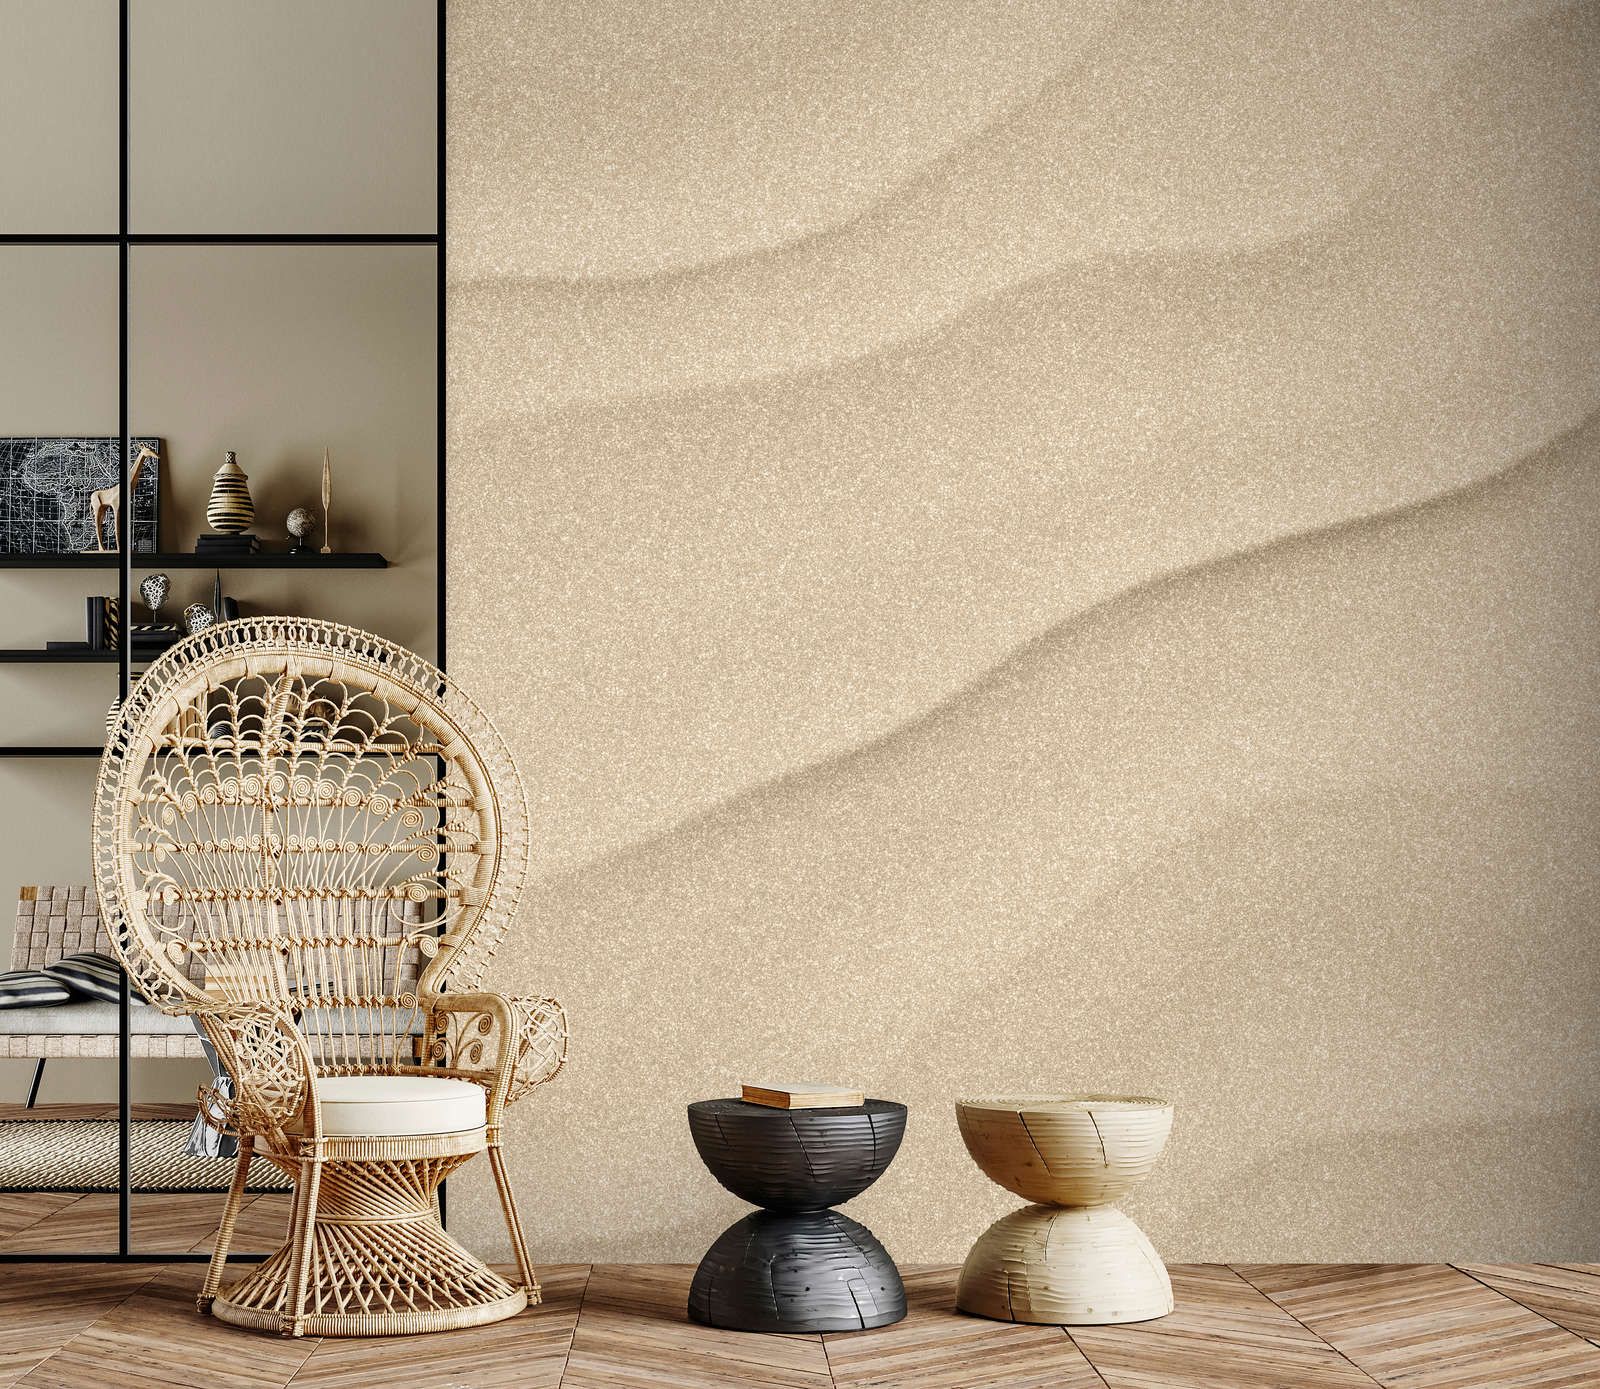             Fotomural »sahara« - Suelo arenoso del desierto con aspecto de papel hecho a mano - Material sin tejer mate y liso
        